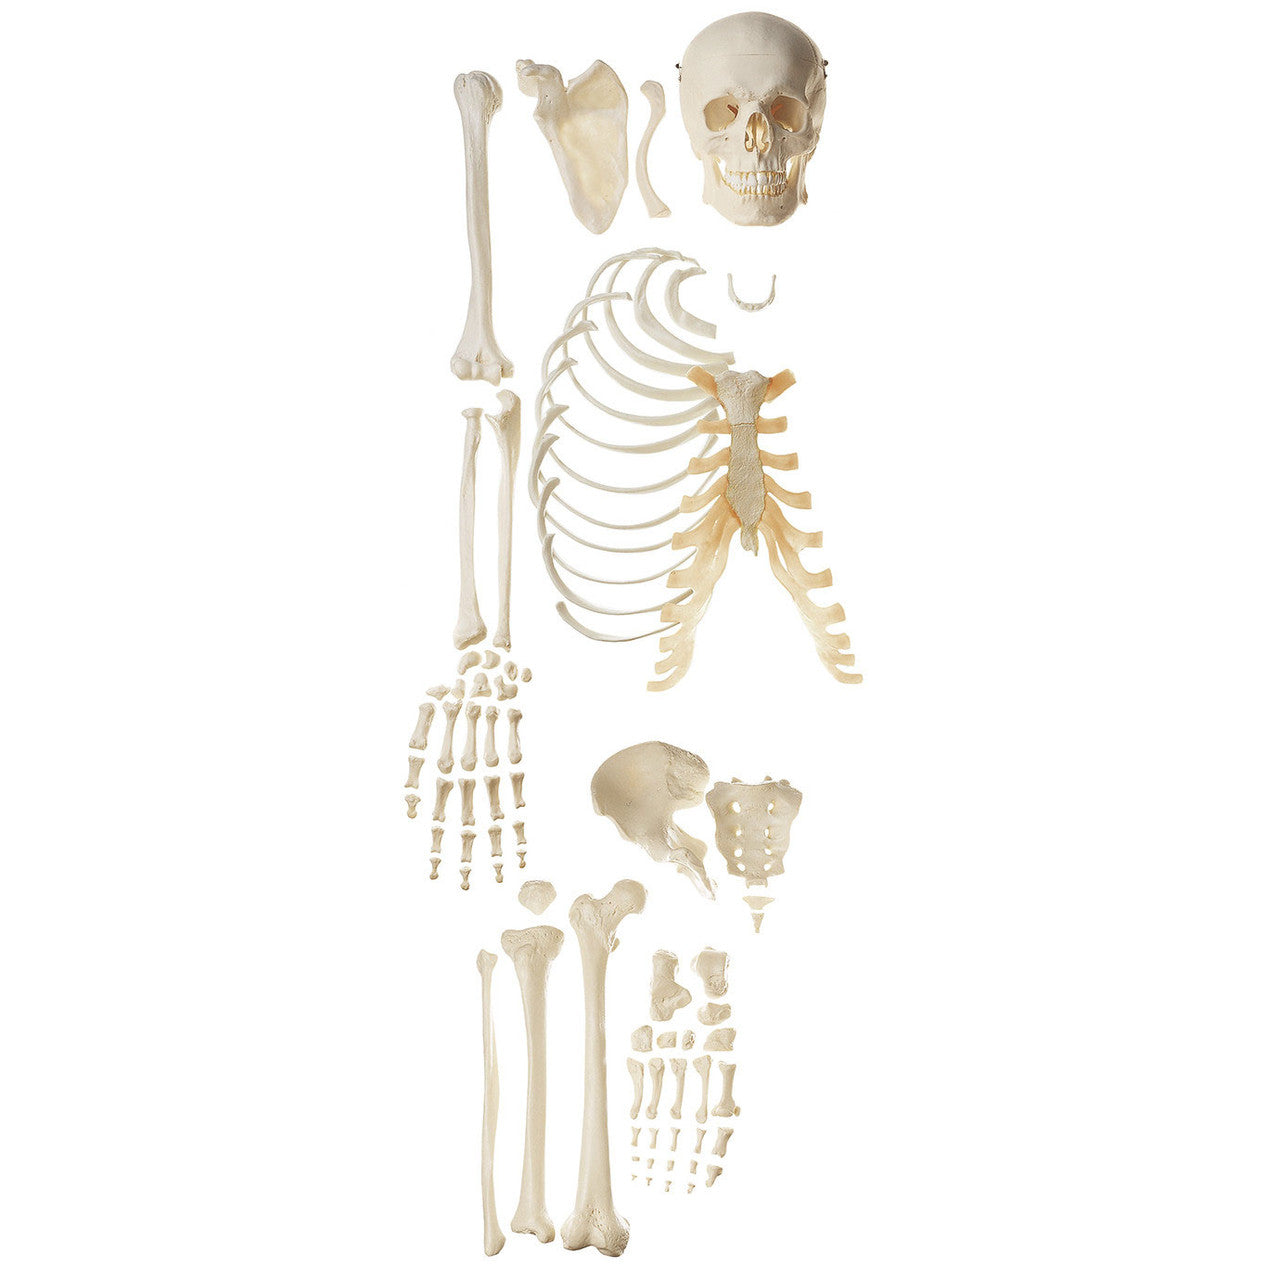 Unmounted Human Half-Skeleton Somso Qs 41/2